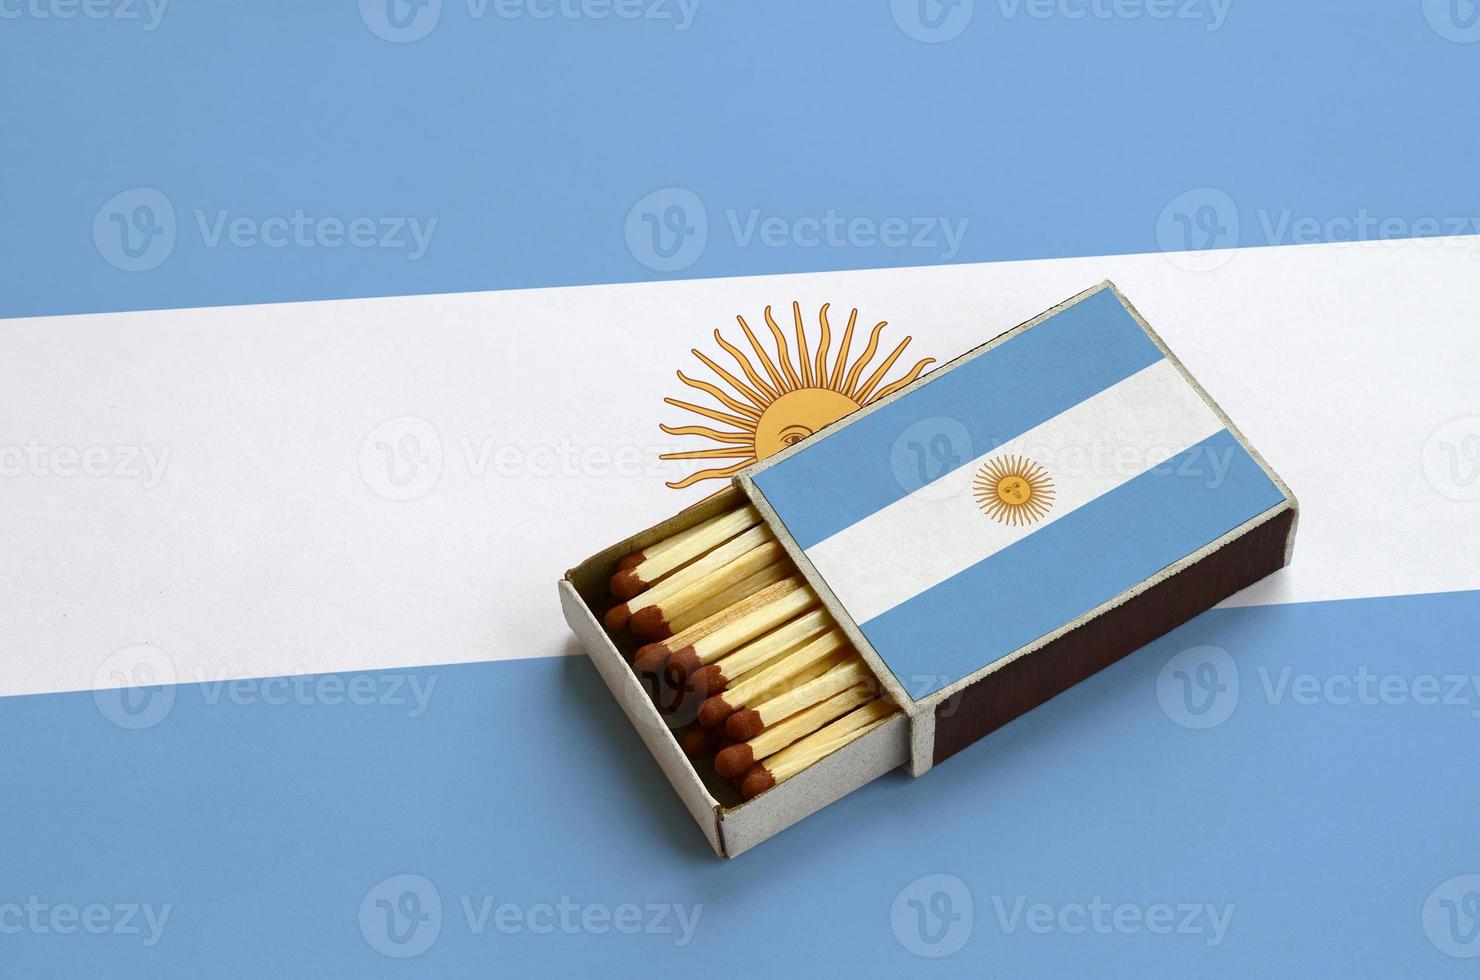 la bandera argentina se muestra en una caja de fósforos abierta, que está llena de fósforos y se encuentra en una bandera grande foto